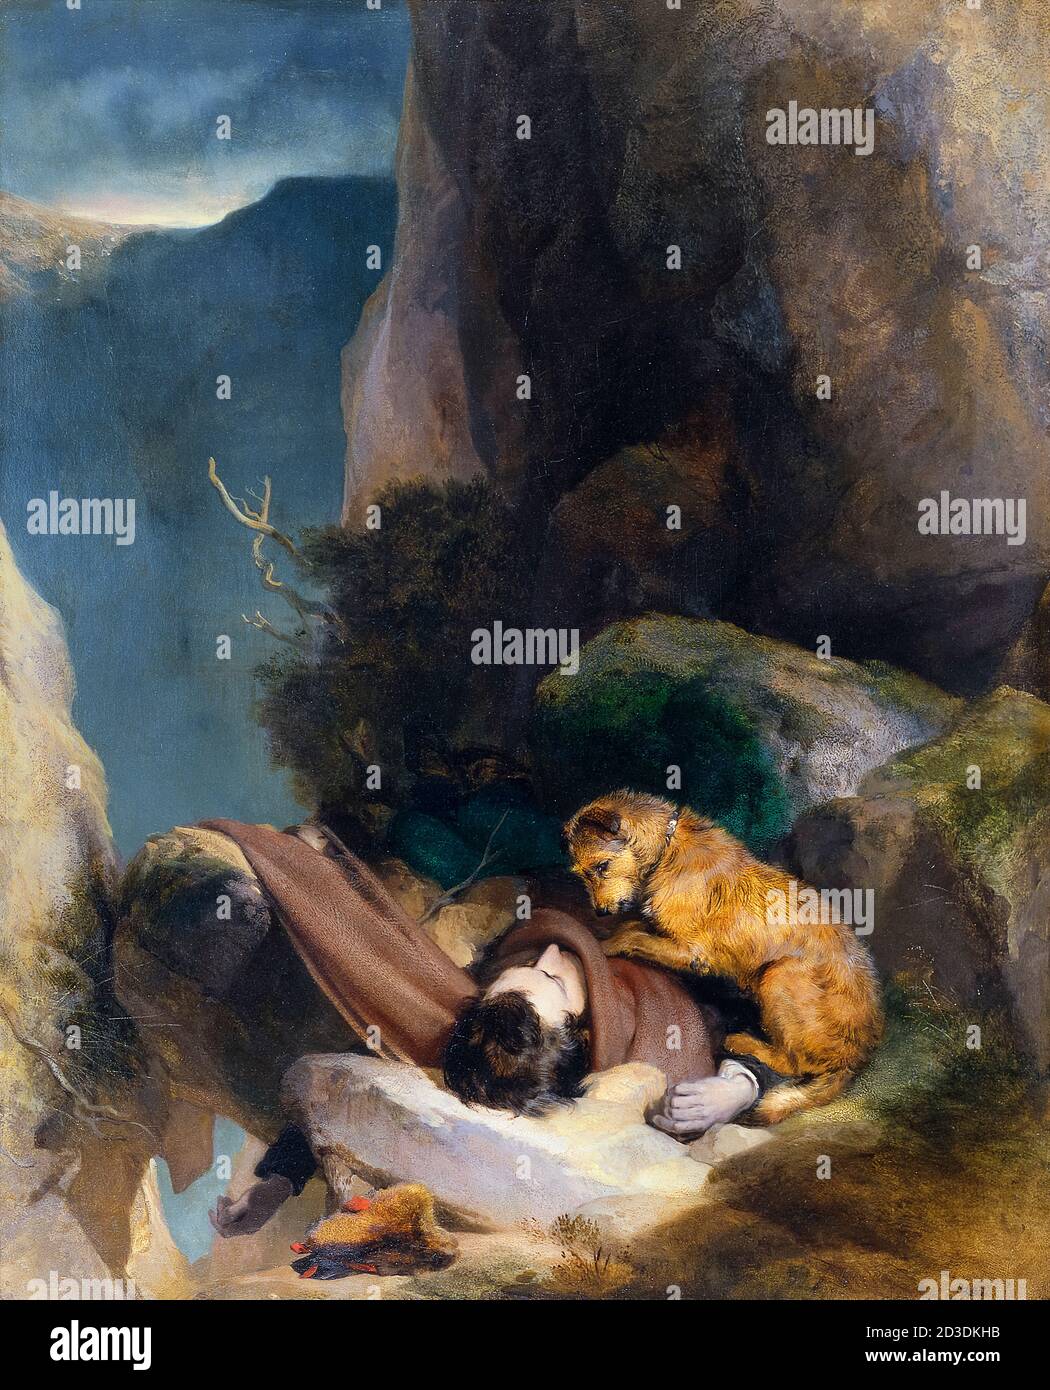 Pièce jointe (représentation visuelle du poème de Sir Walter Scott 'Helvellyn'), peinture de Sir Edwin Henry Landseer, 1829 Banque D'Images